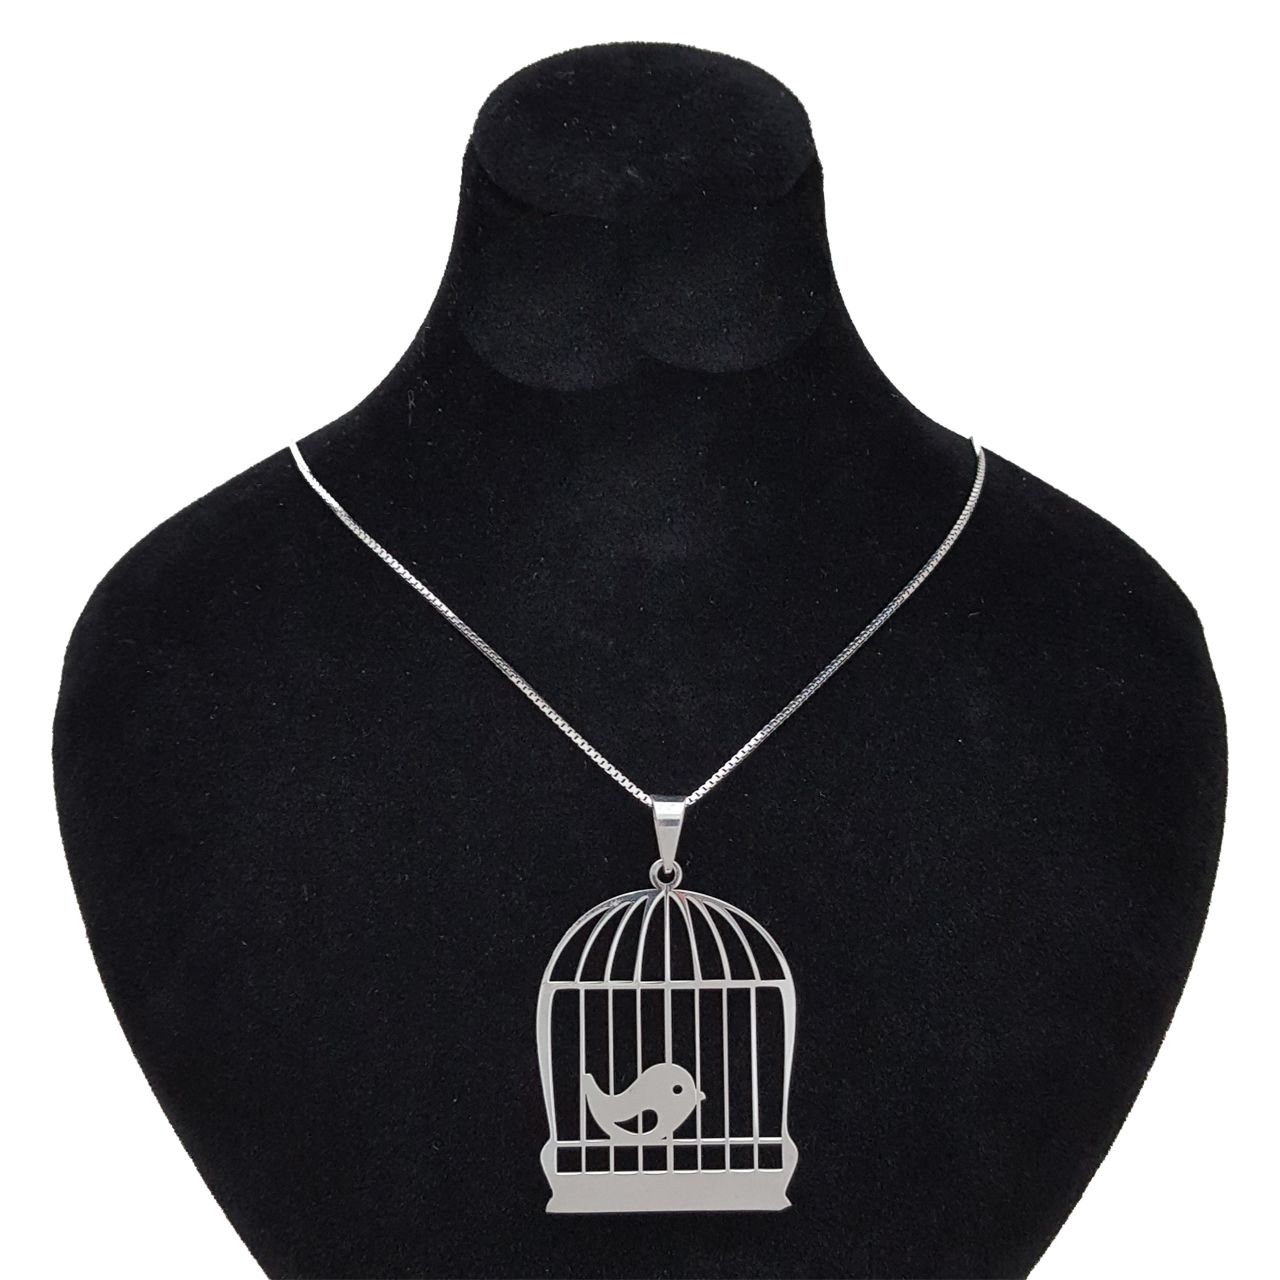 گردنبند نقره زنانه طرح پرنده و قفس کد 001 -  - 1